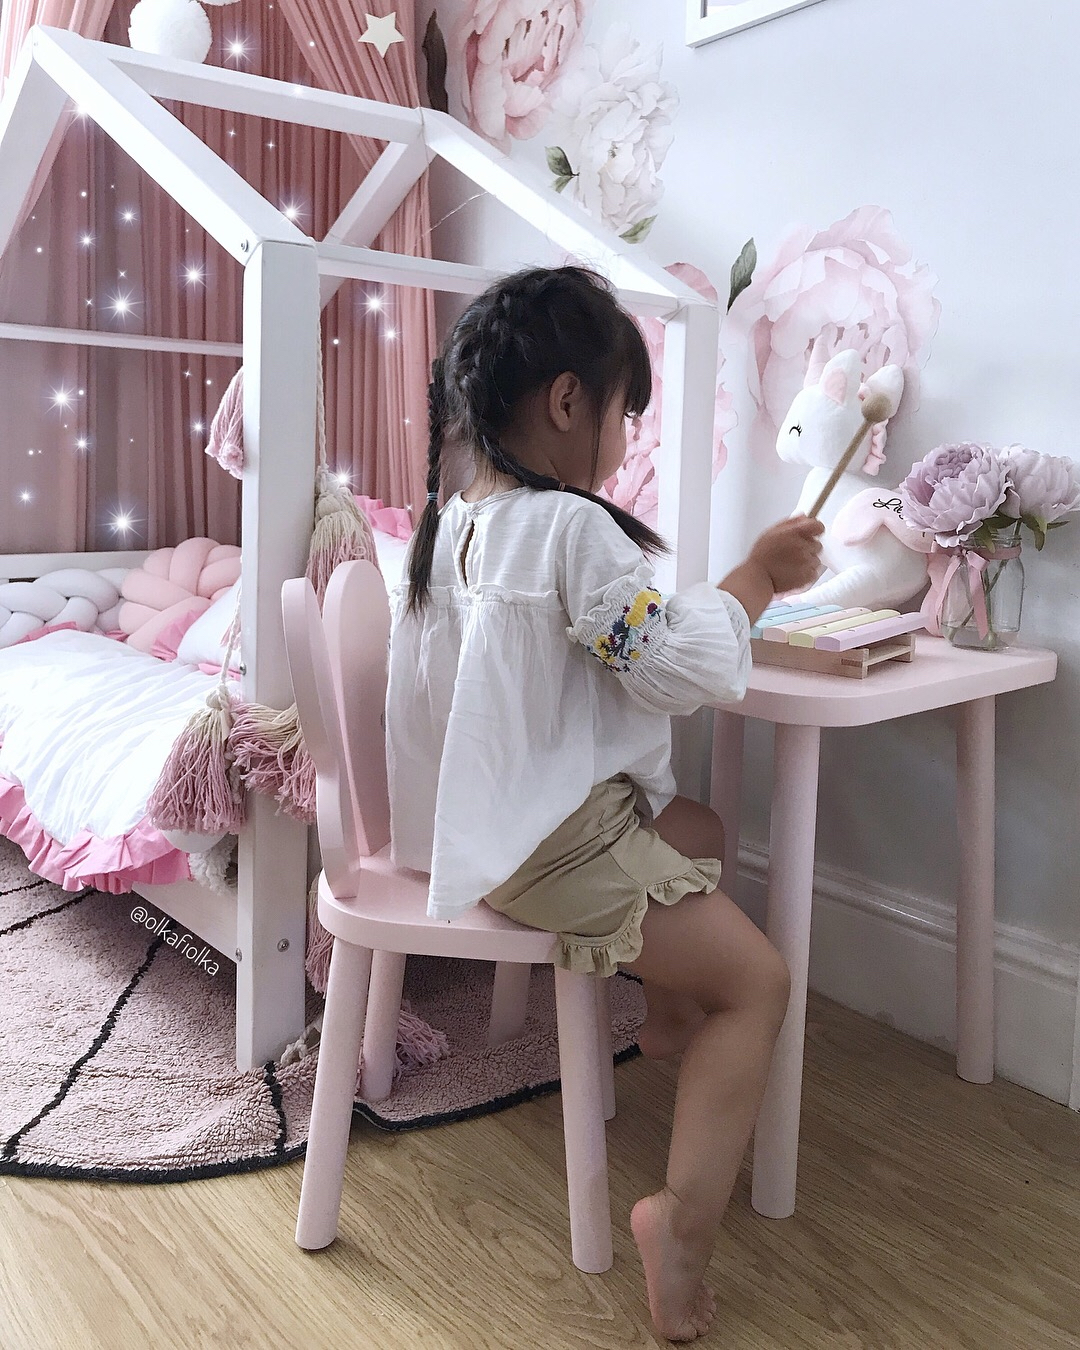 krzesełko butterfly motylek dla dzieci pastelowy róż drewniane